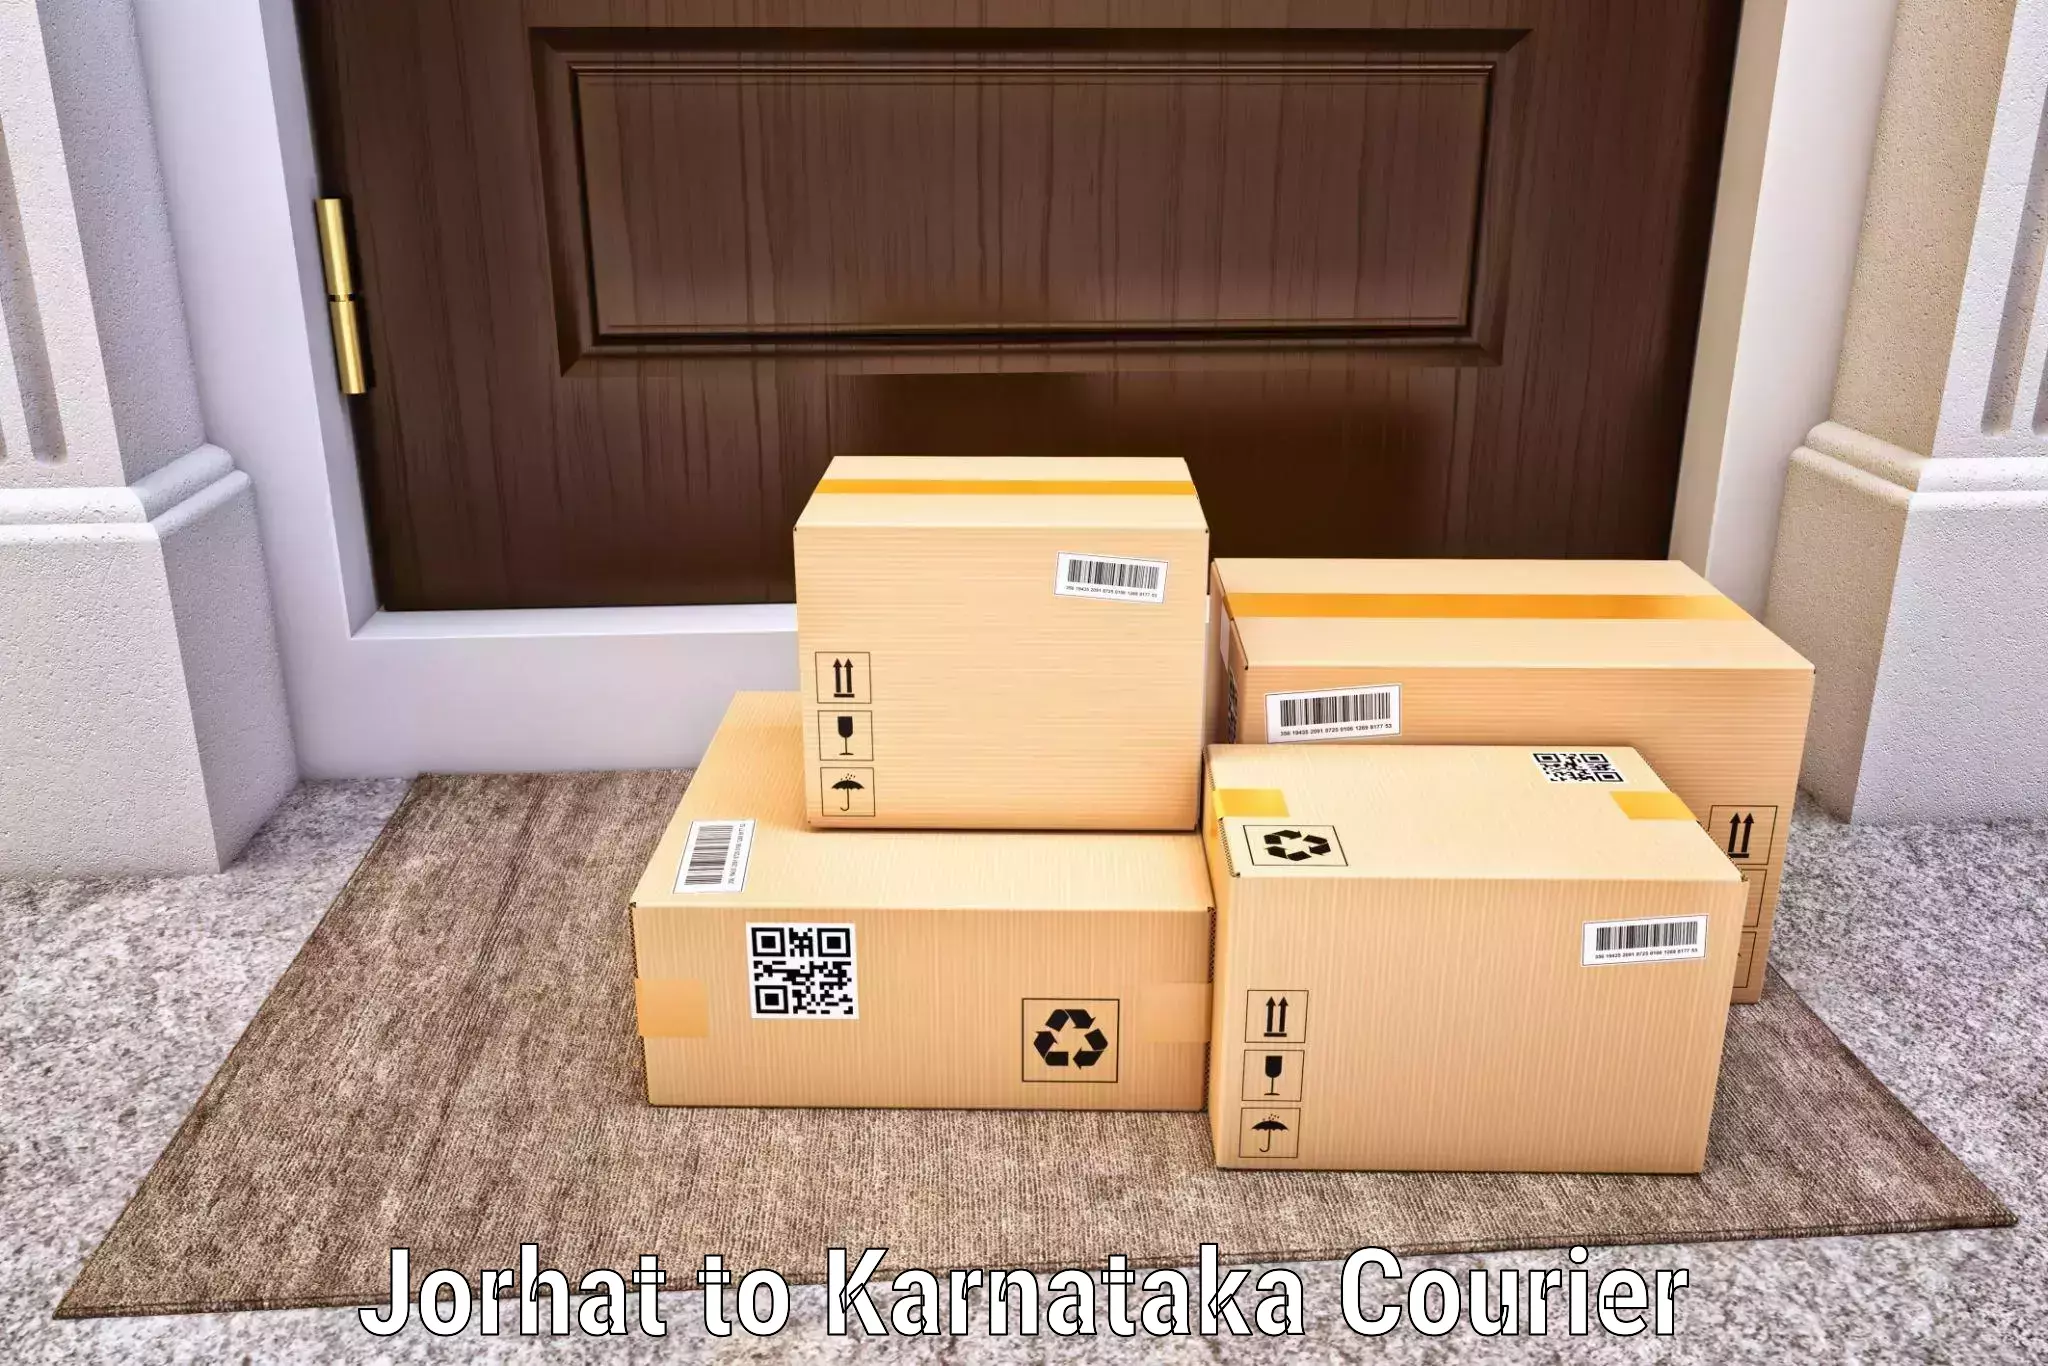 Secure packaging in Jorhat to Karnataka